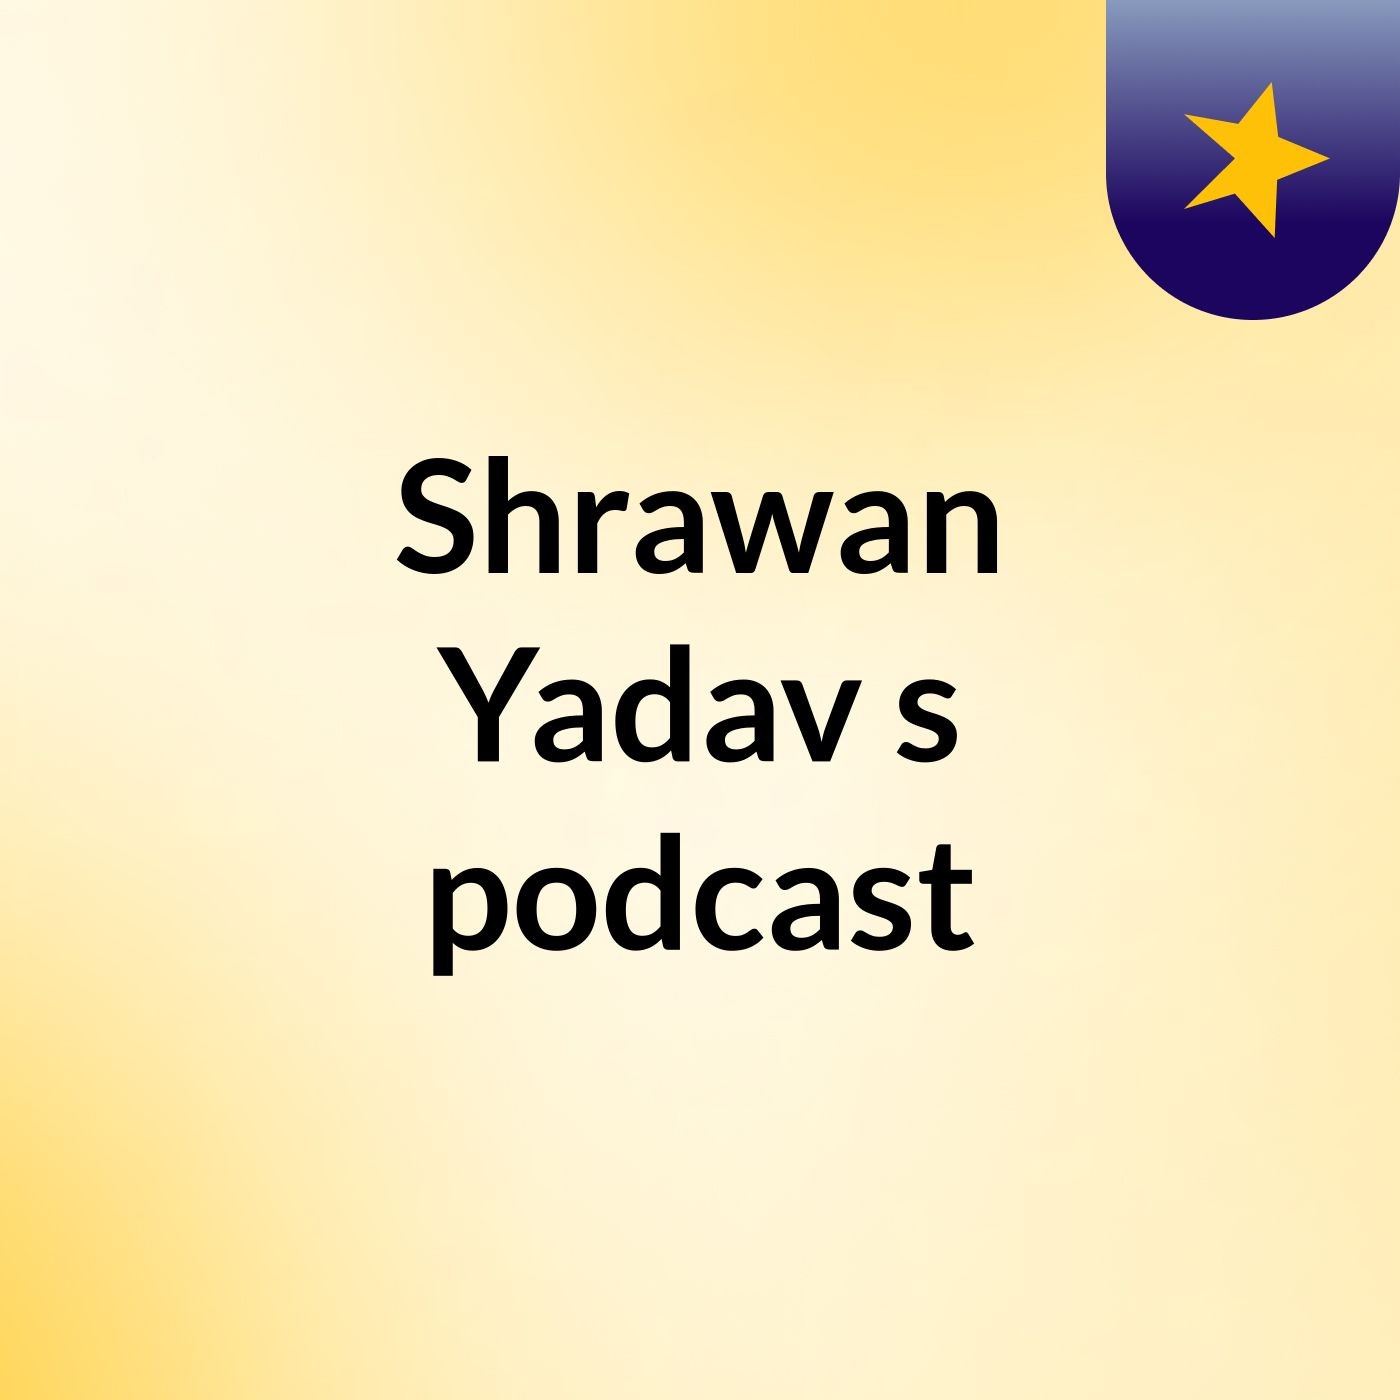 Episode 2 - Shrawan Yadav's podcast